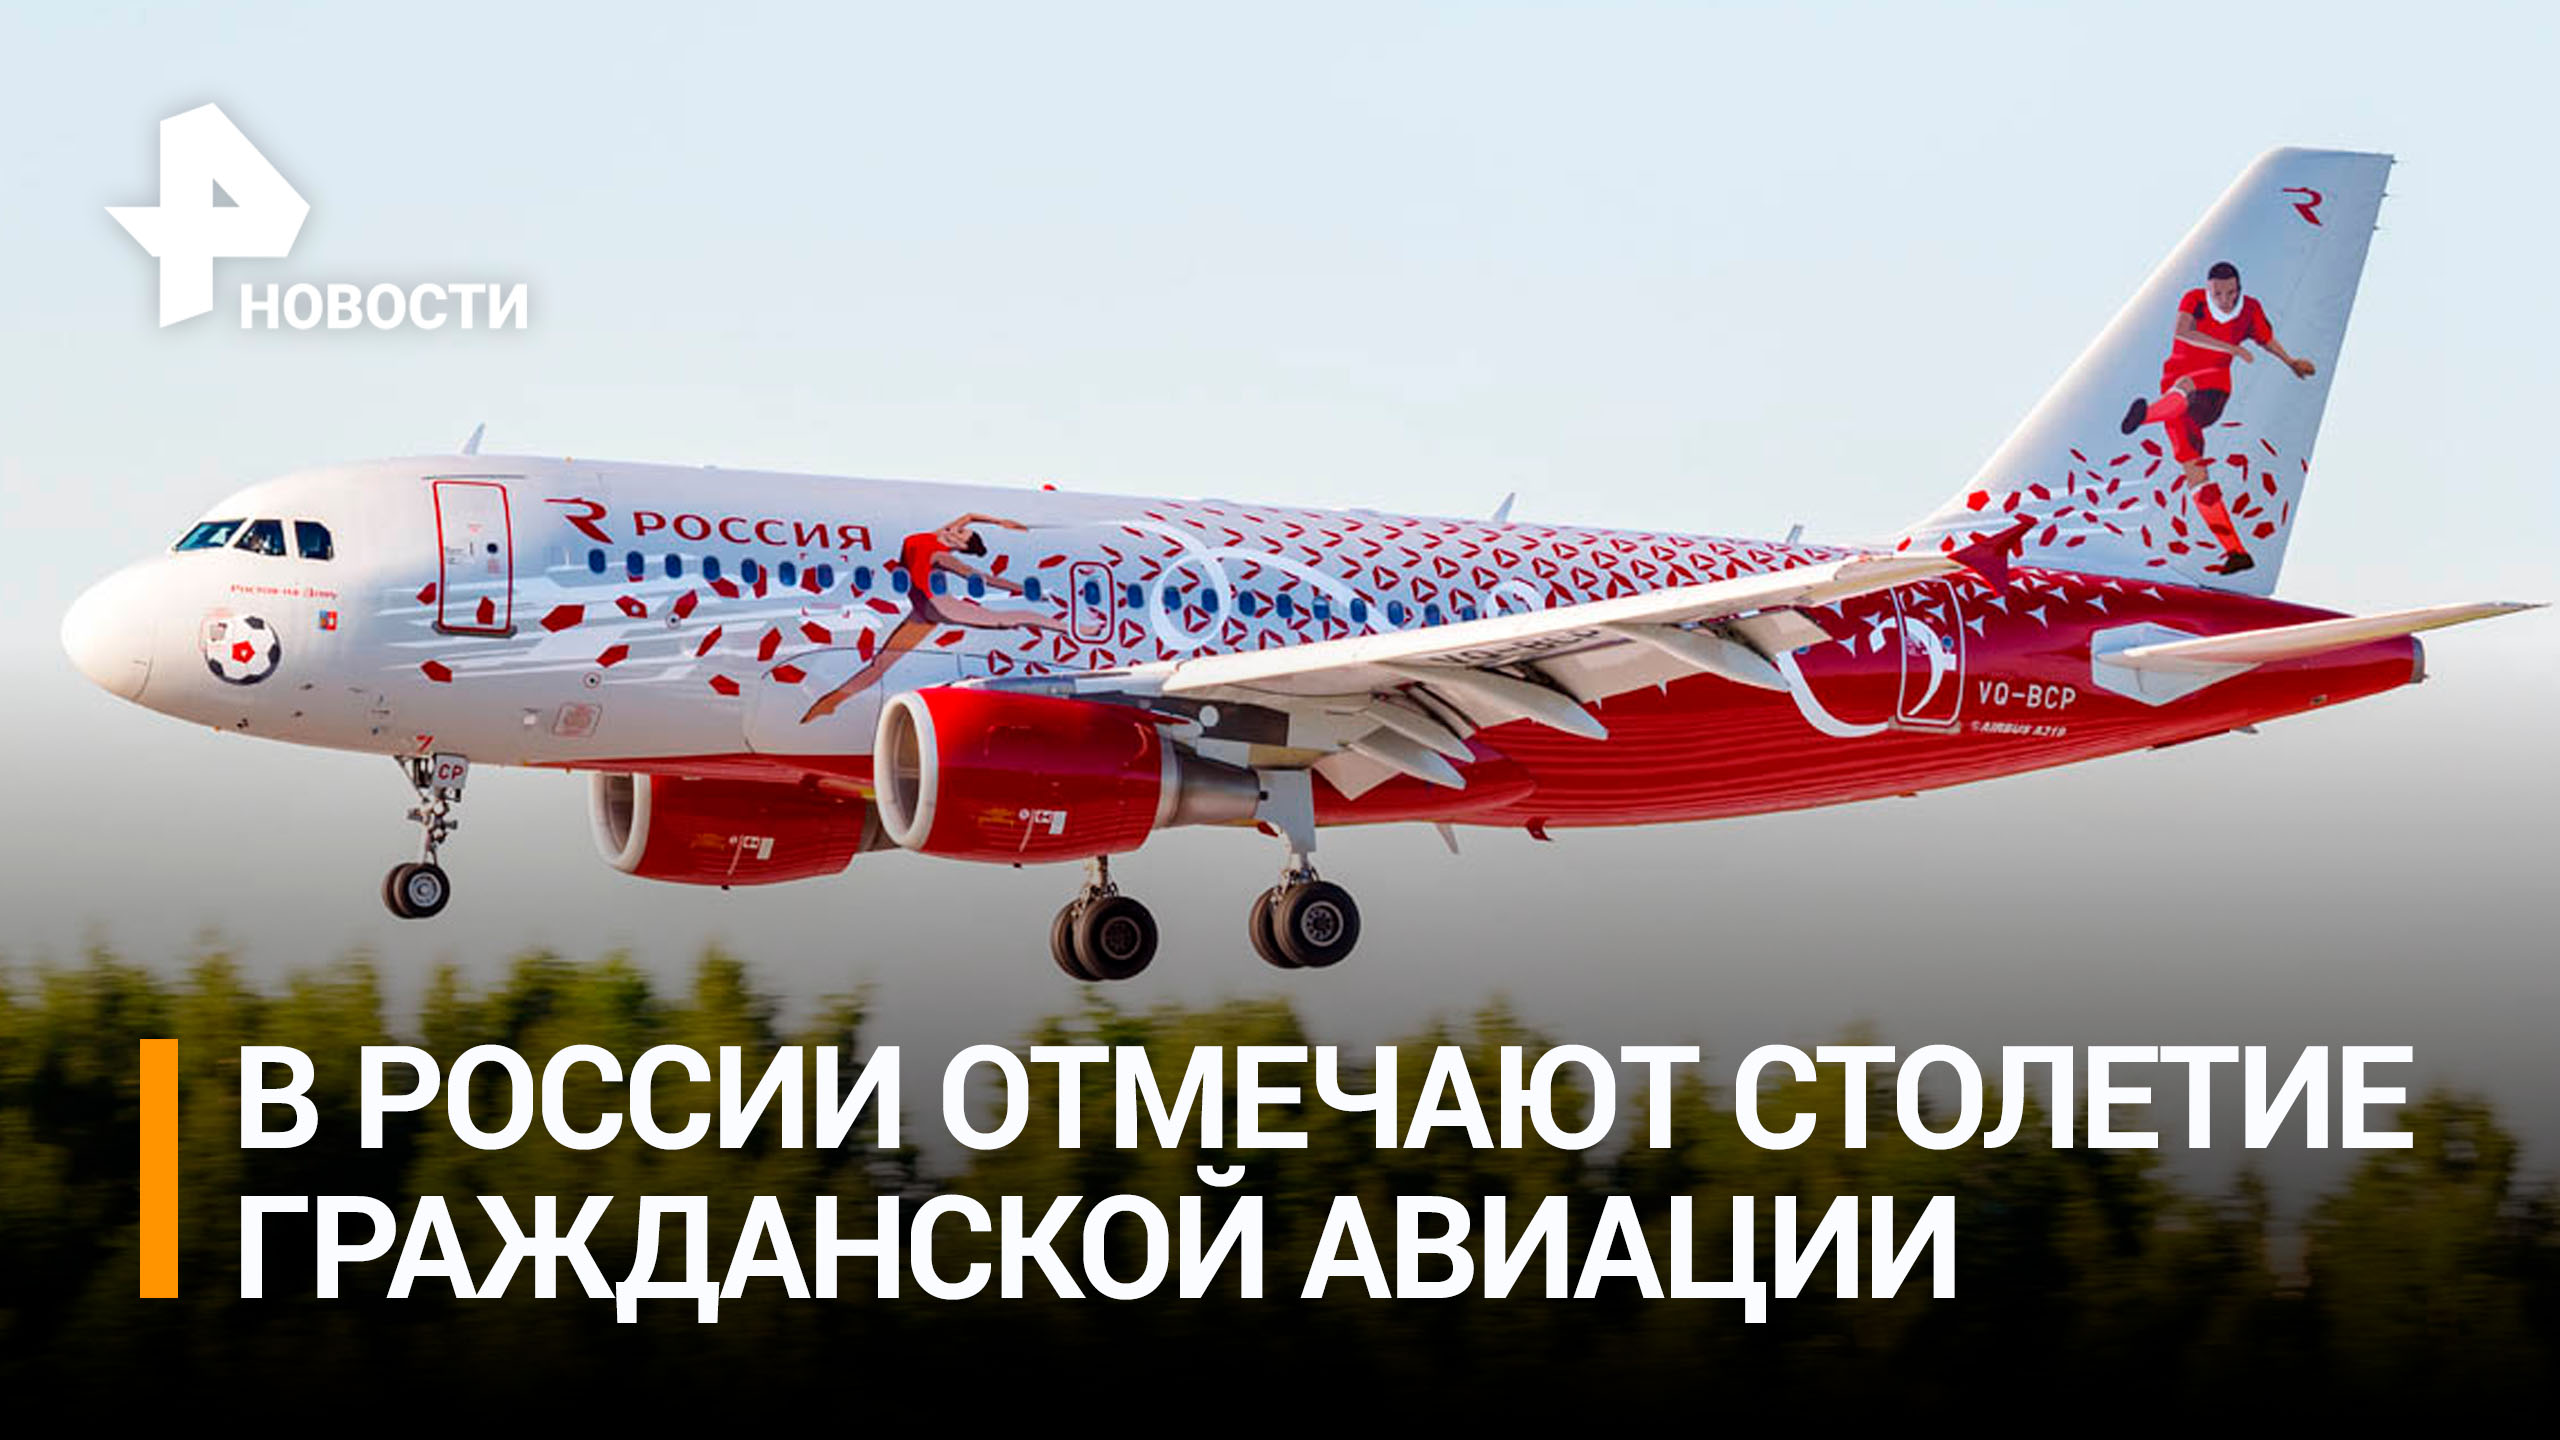 9 февраля исполняется 100 лет со дня основания гражданской авиации России / РЕН Новости